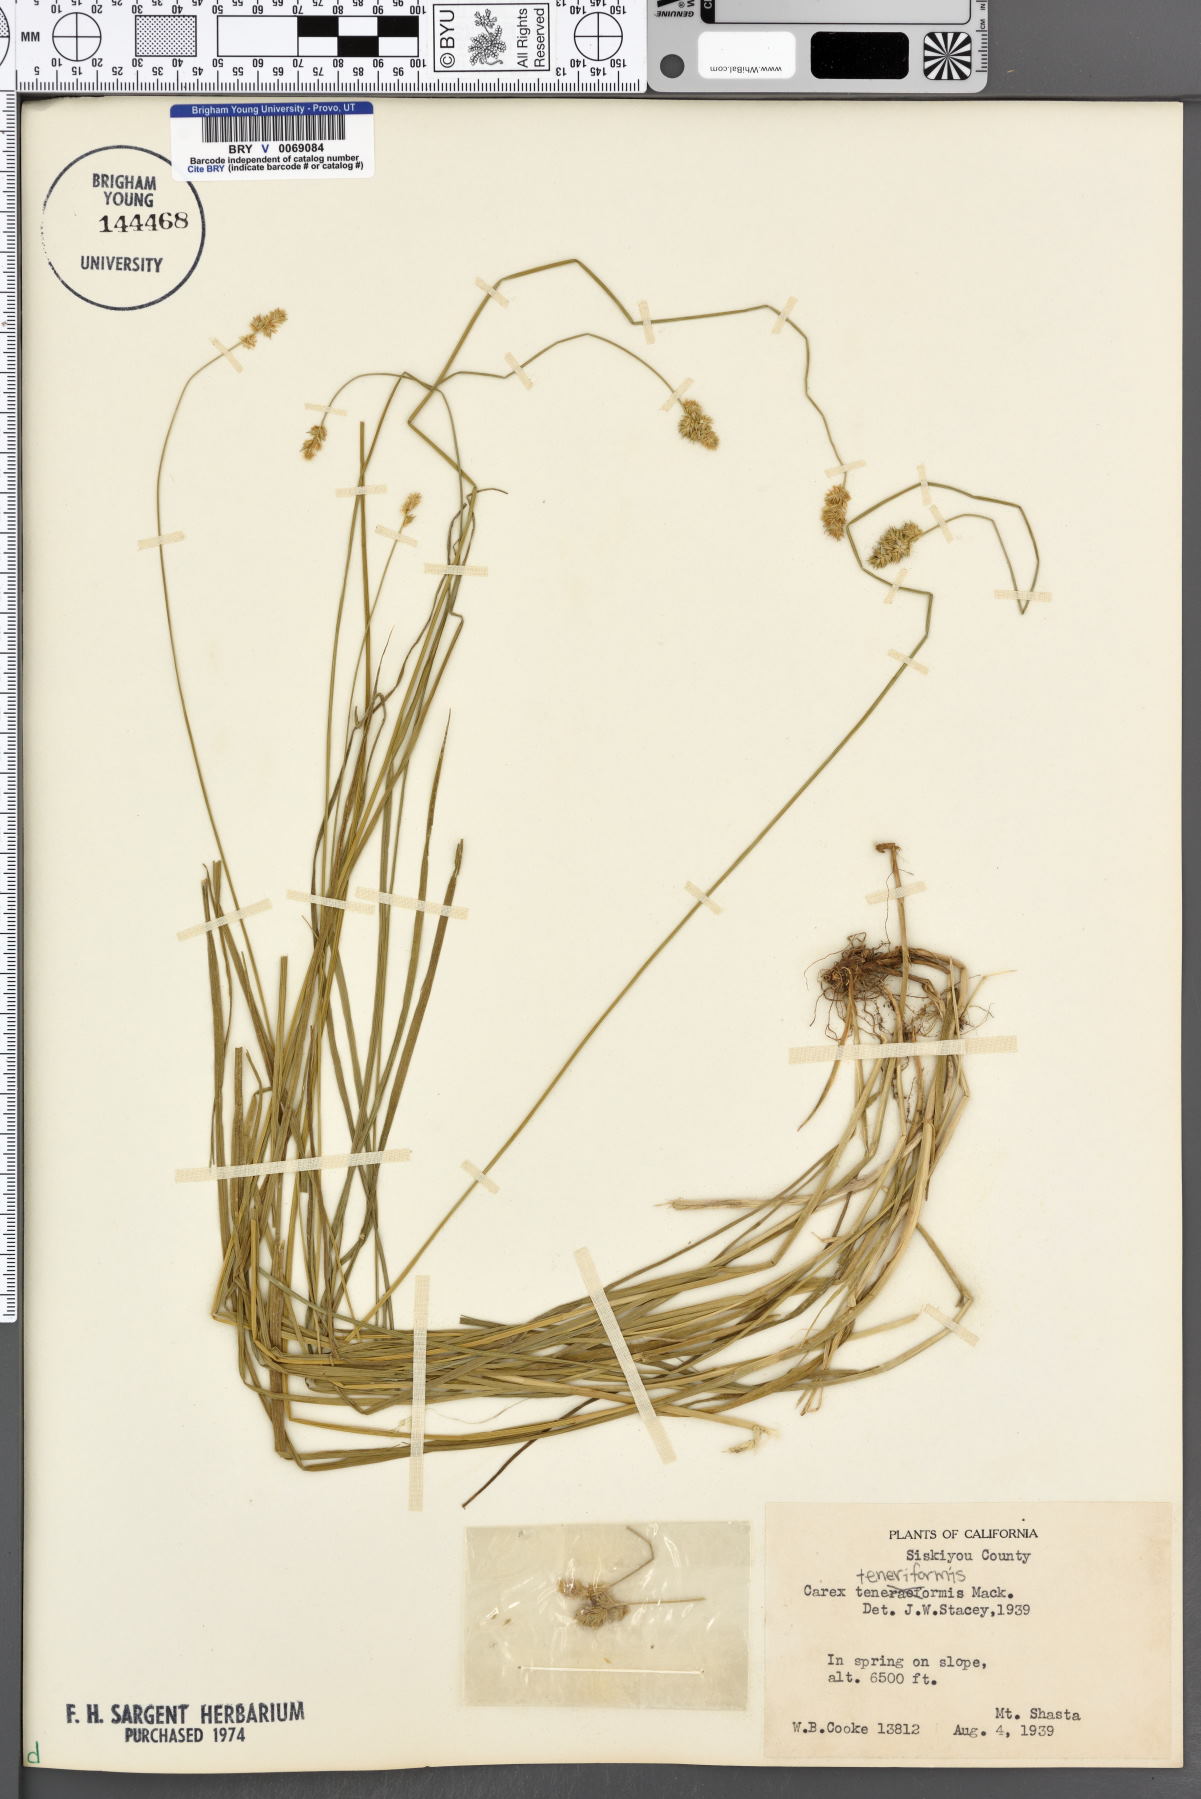 Carex teneriformis image